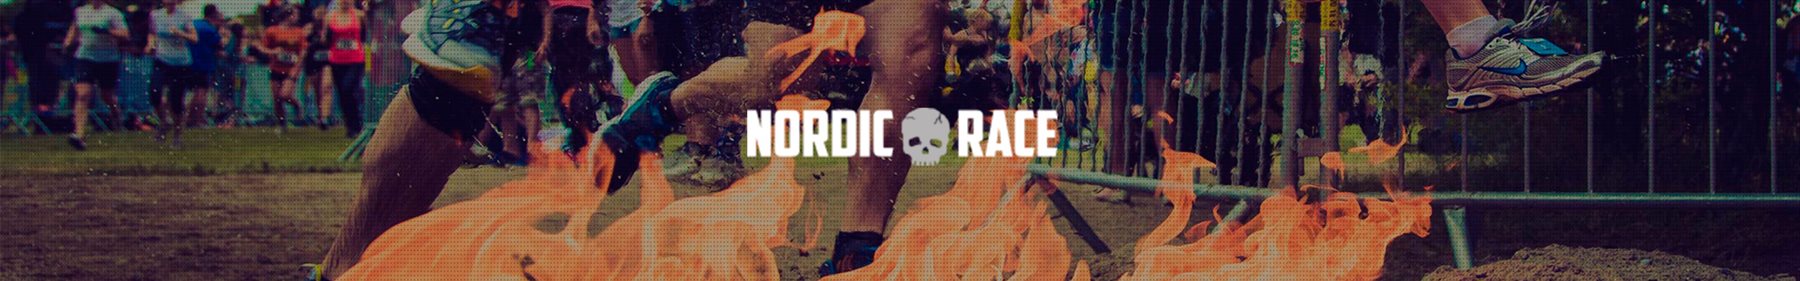 Nordic Race Høvelte Kaserne